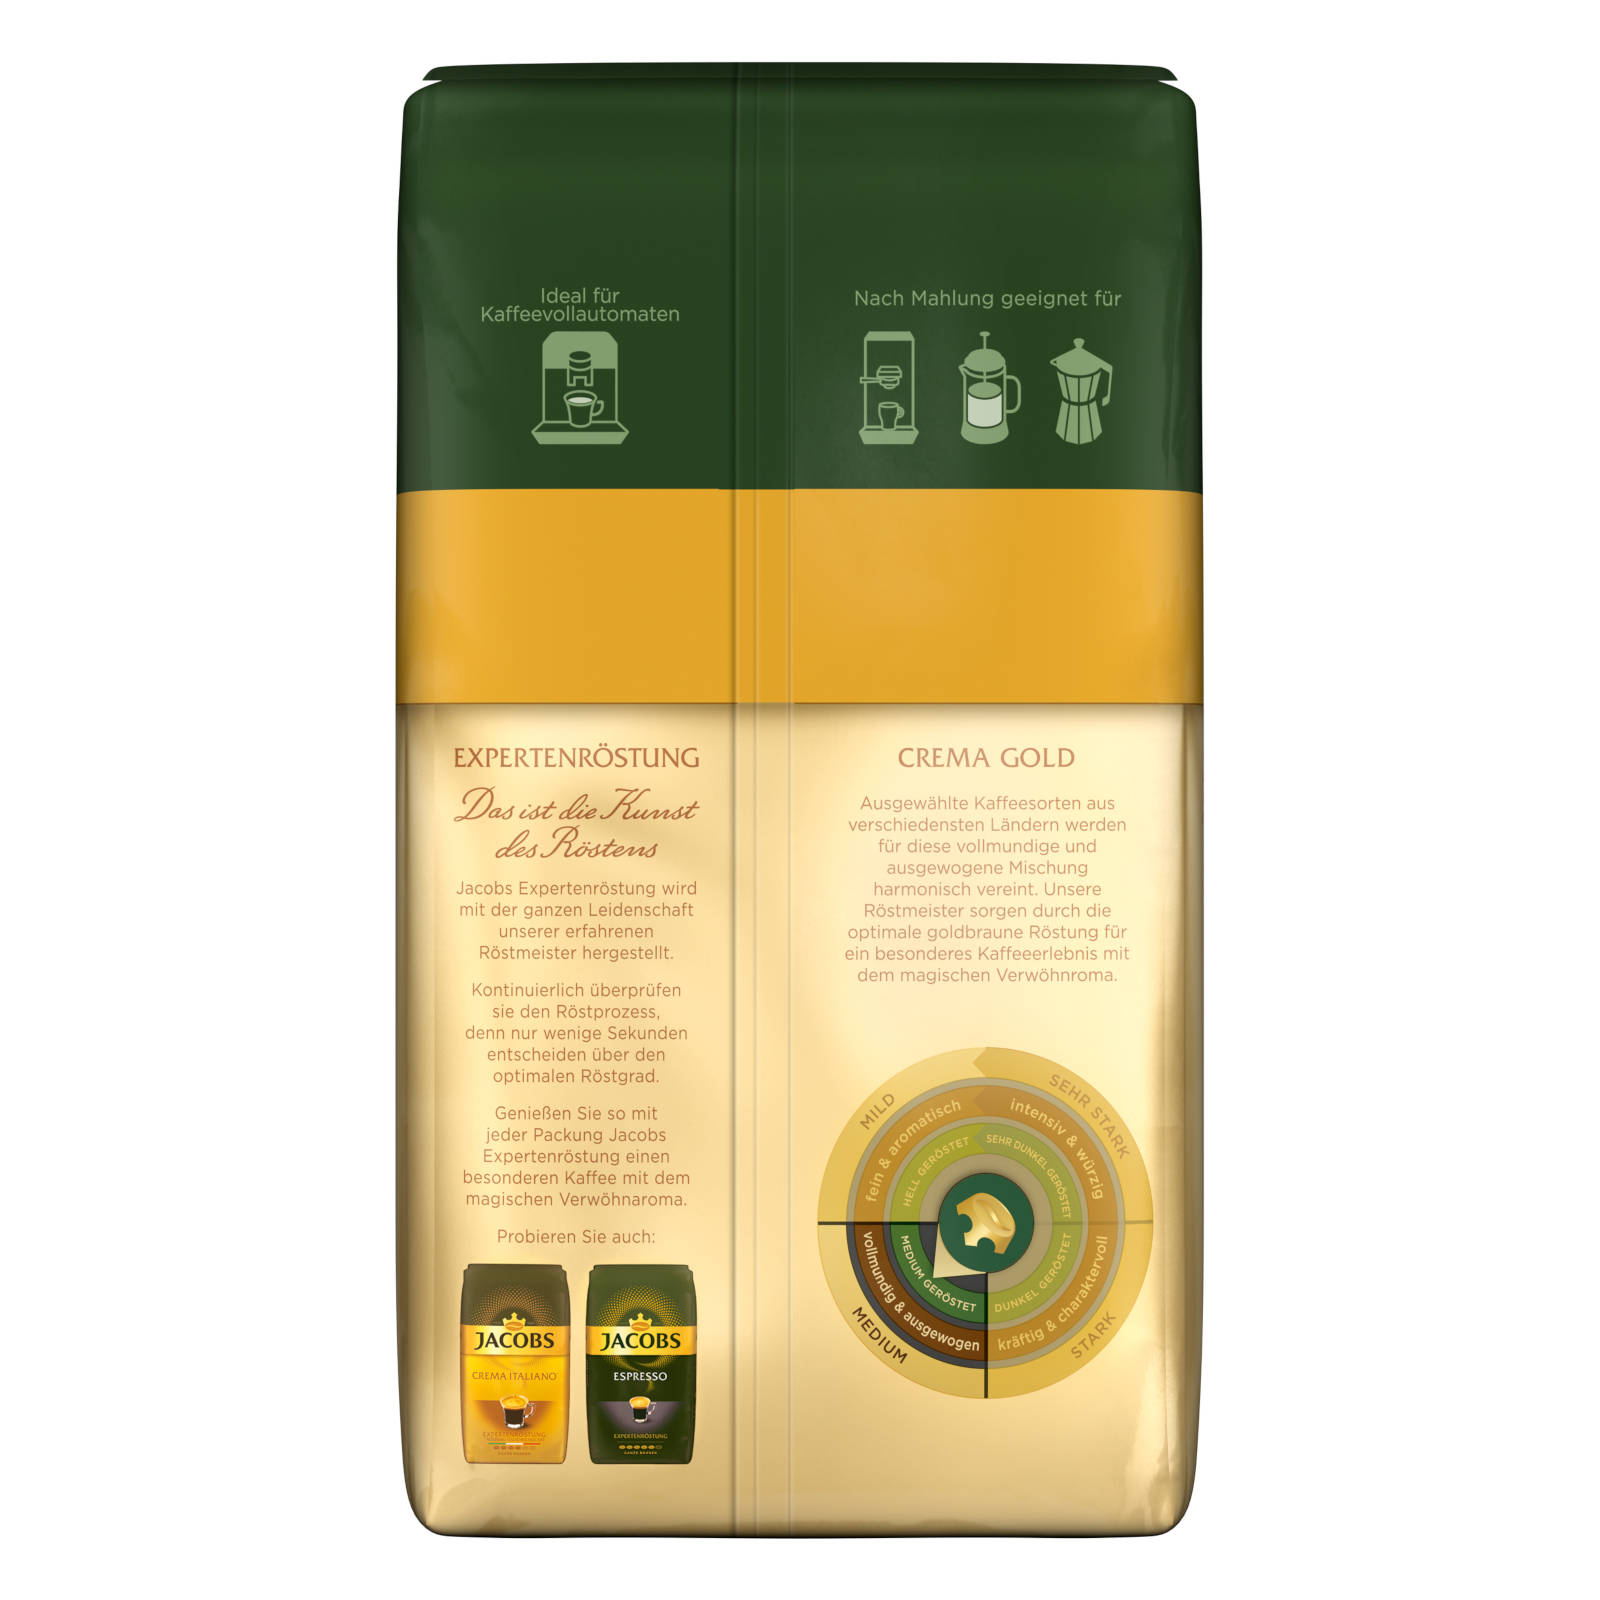 JACOBS Expertenröstung Crema Gold x geröstete 4 Kaffeebohnen (Kaffeevollautomat) kg 1 ganze